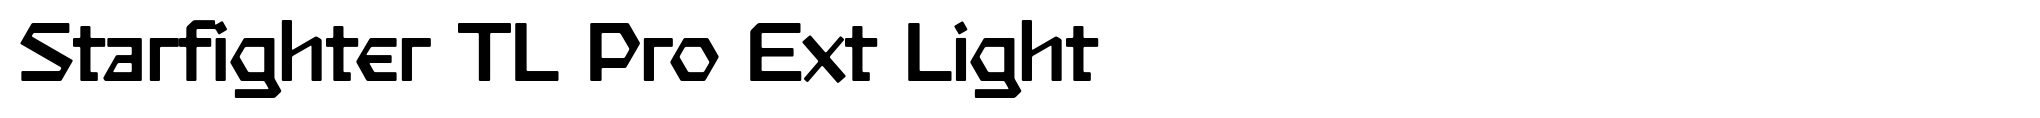 Starfighter TL Pro Ext Light image